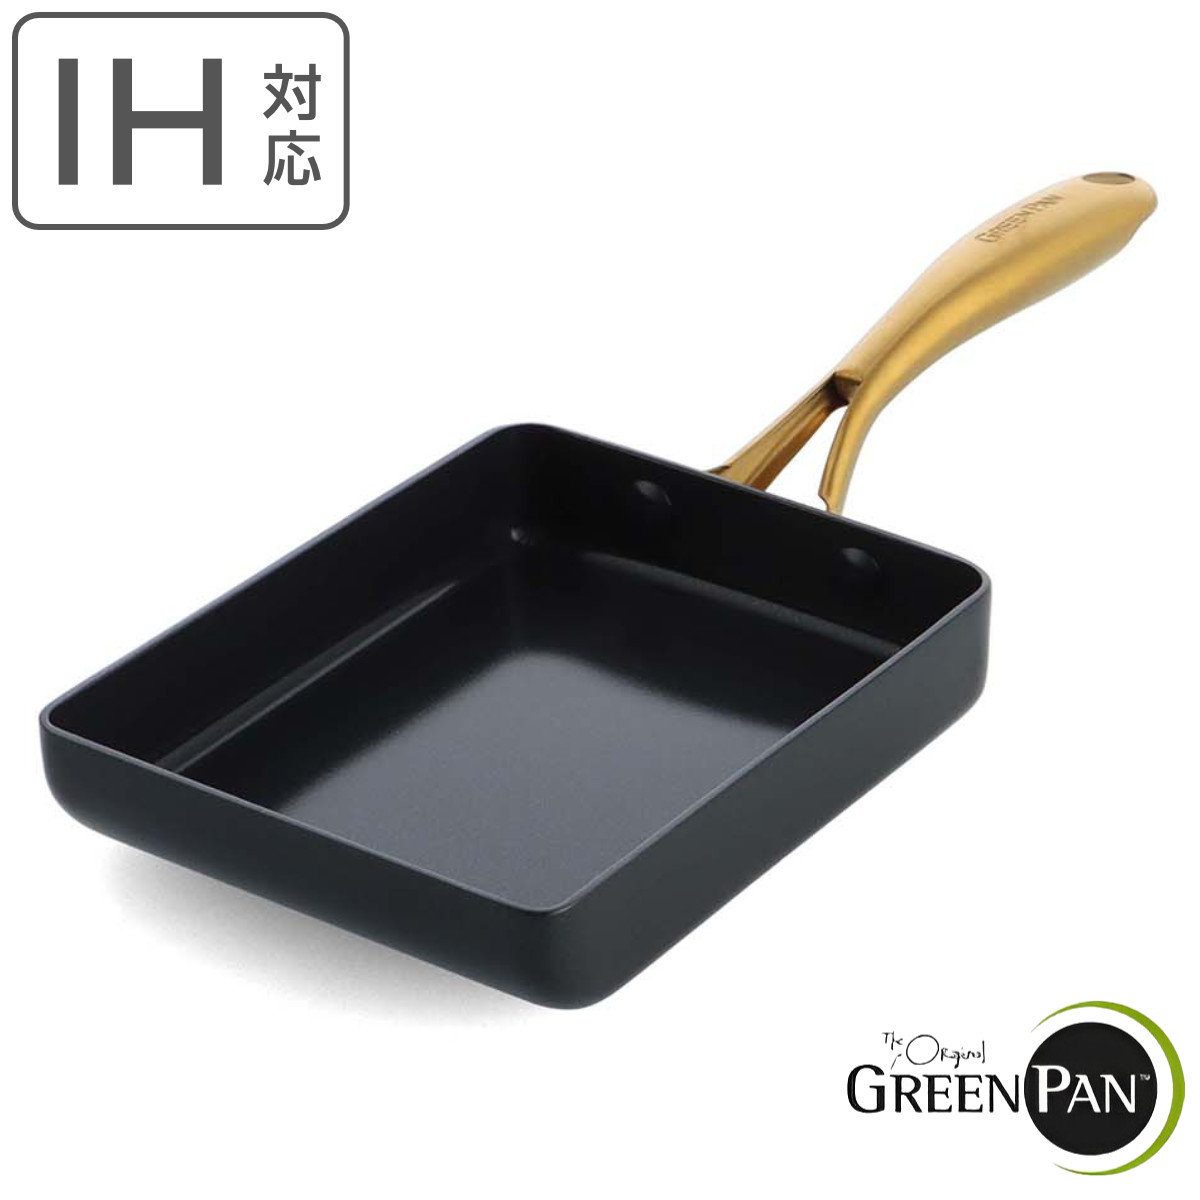 GREEN PAN 玉子焼き器 IH対応 ストゥディオ